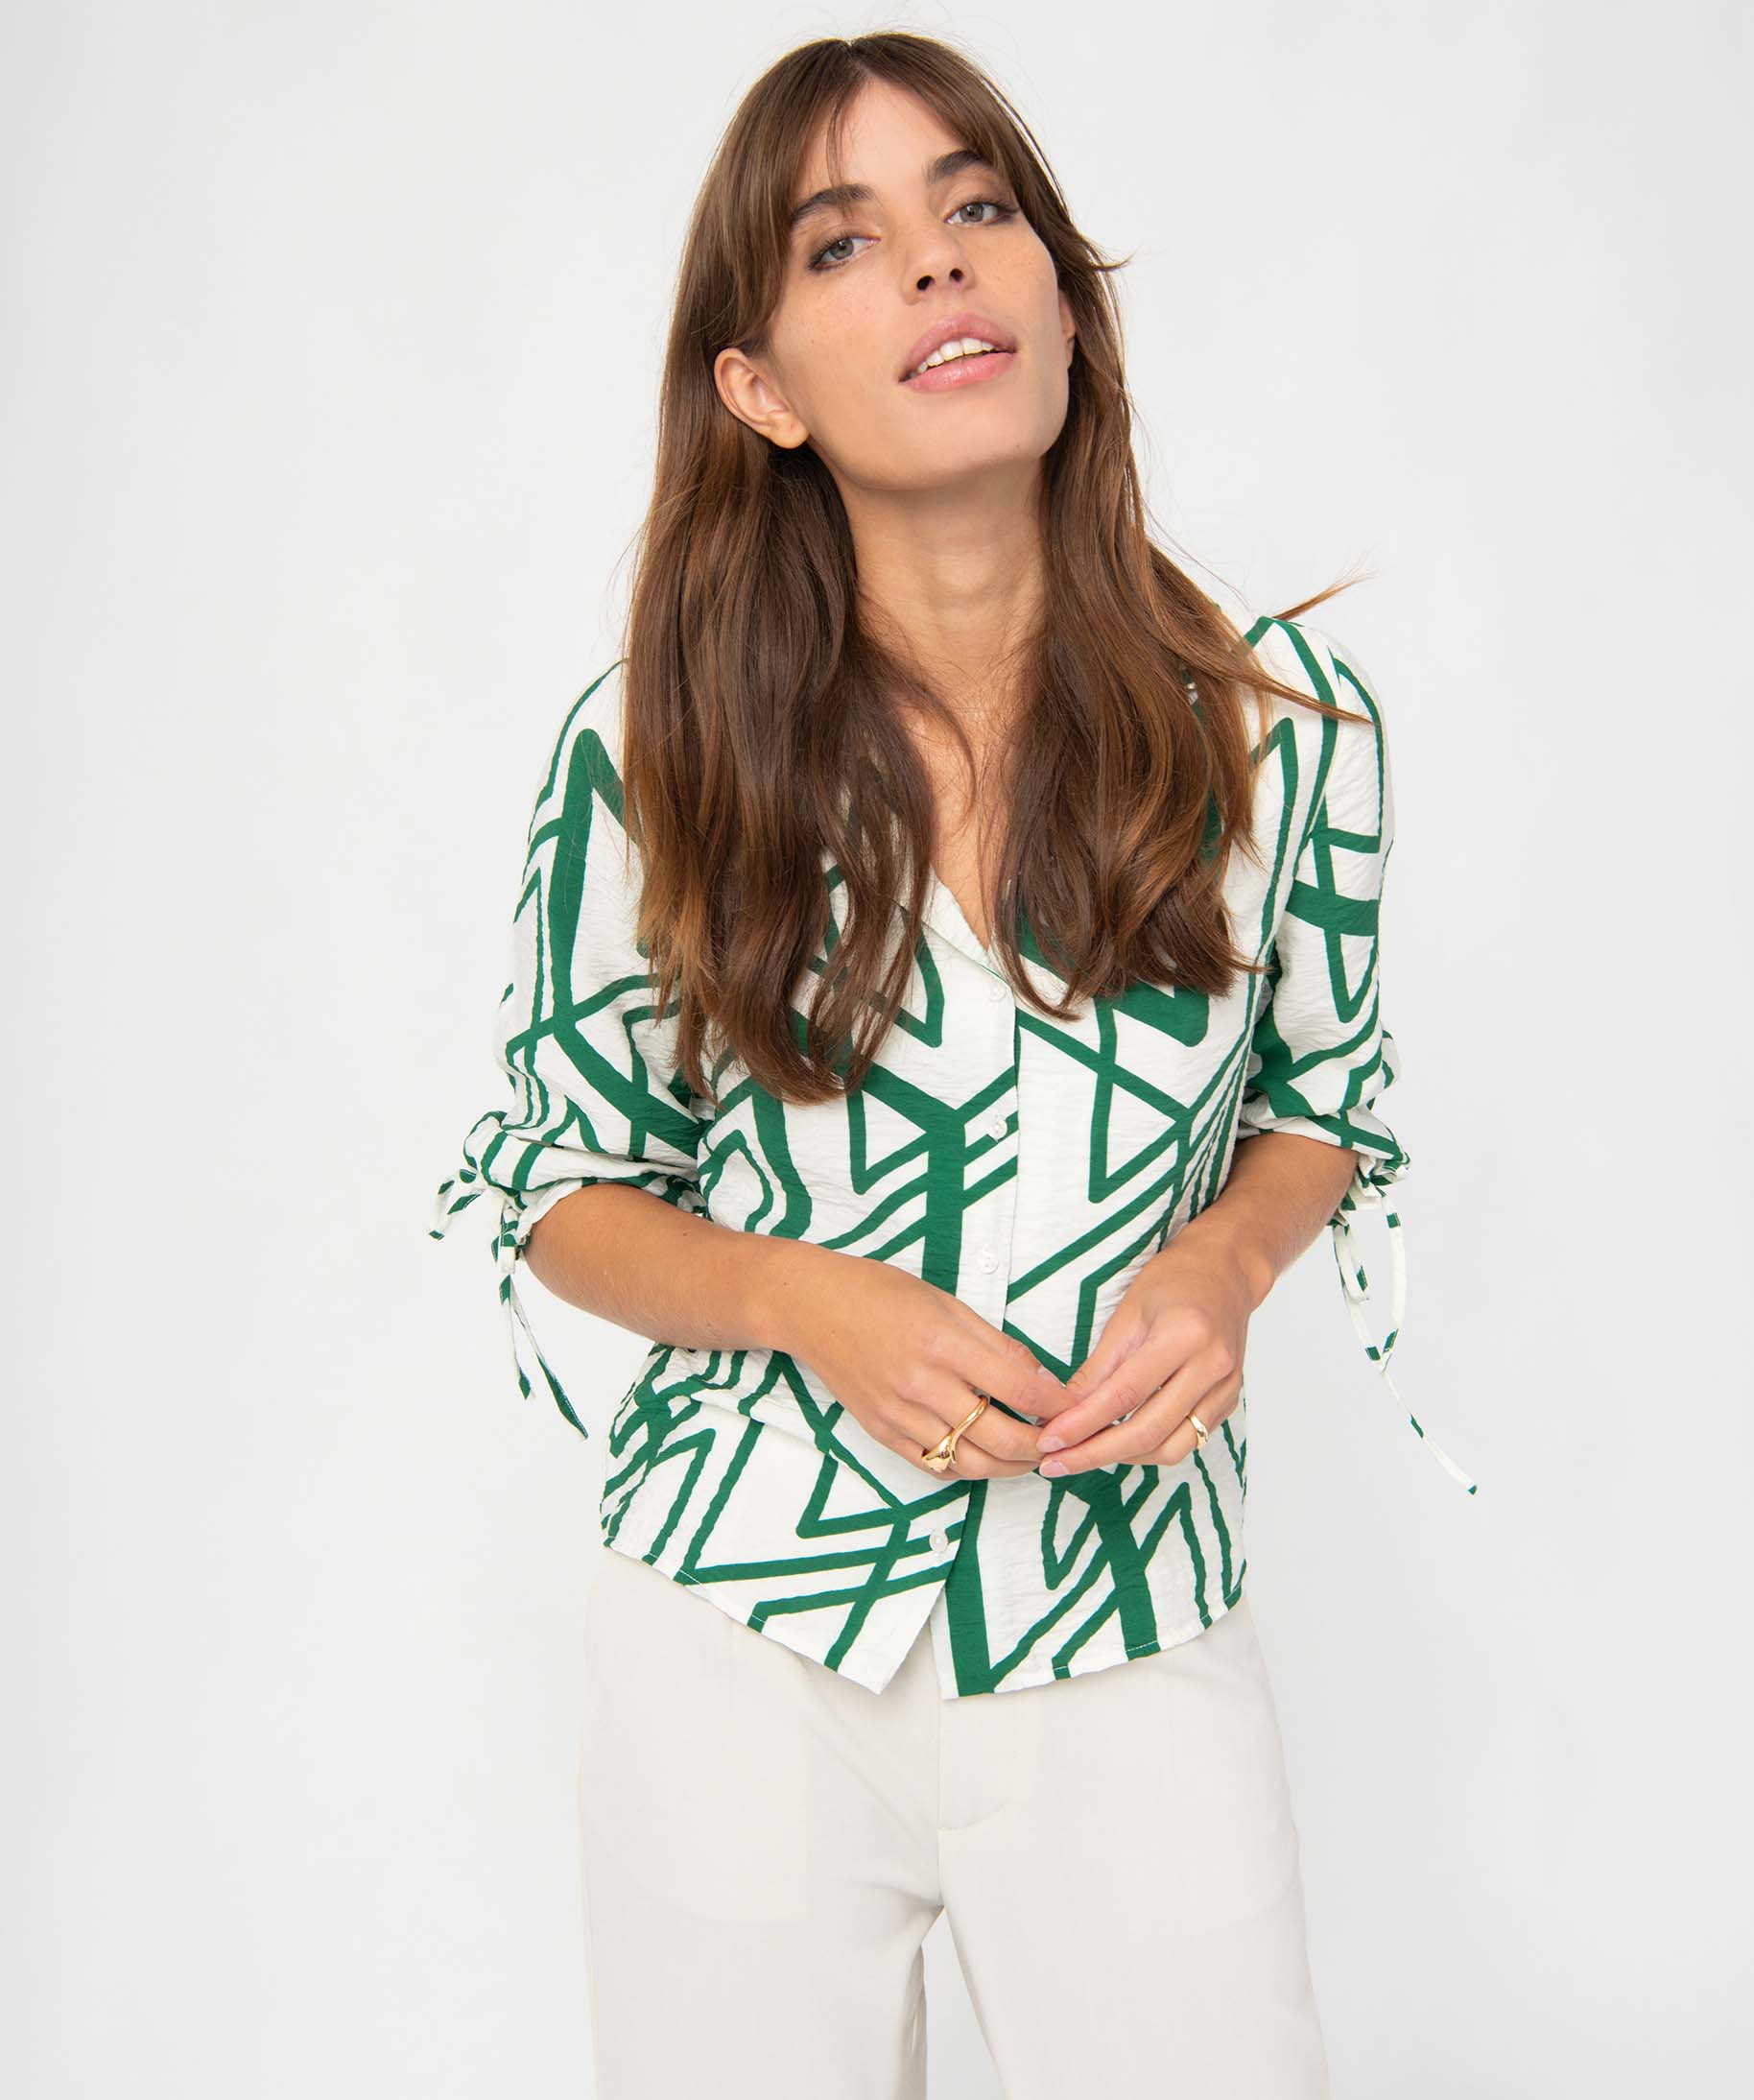 chemise femme en matiere texturee et imprimee avec manches 34 fantaisie imprime chemisiers